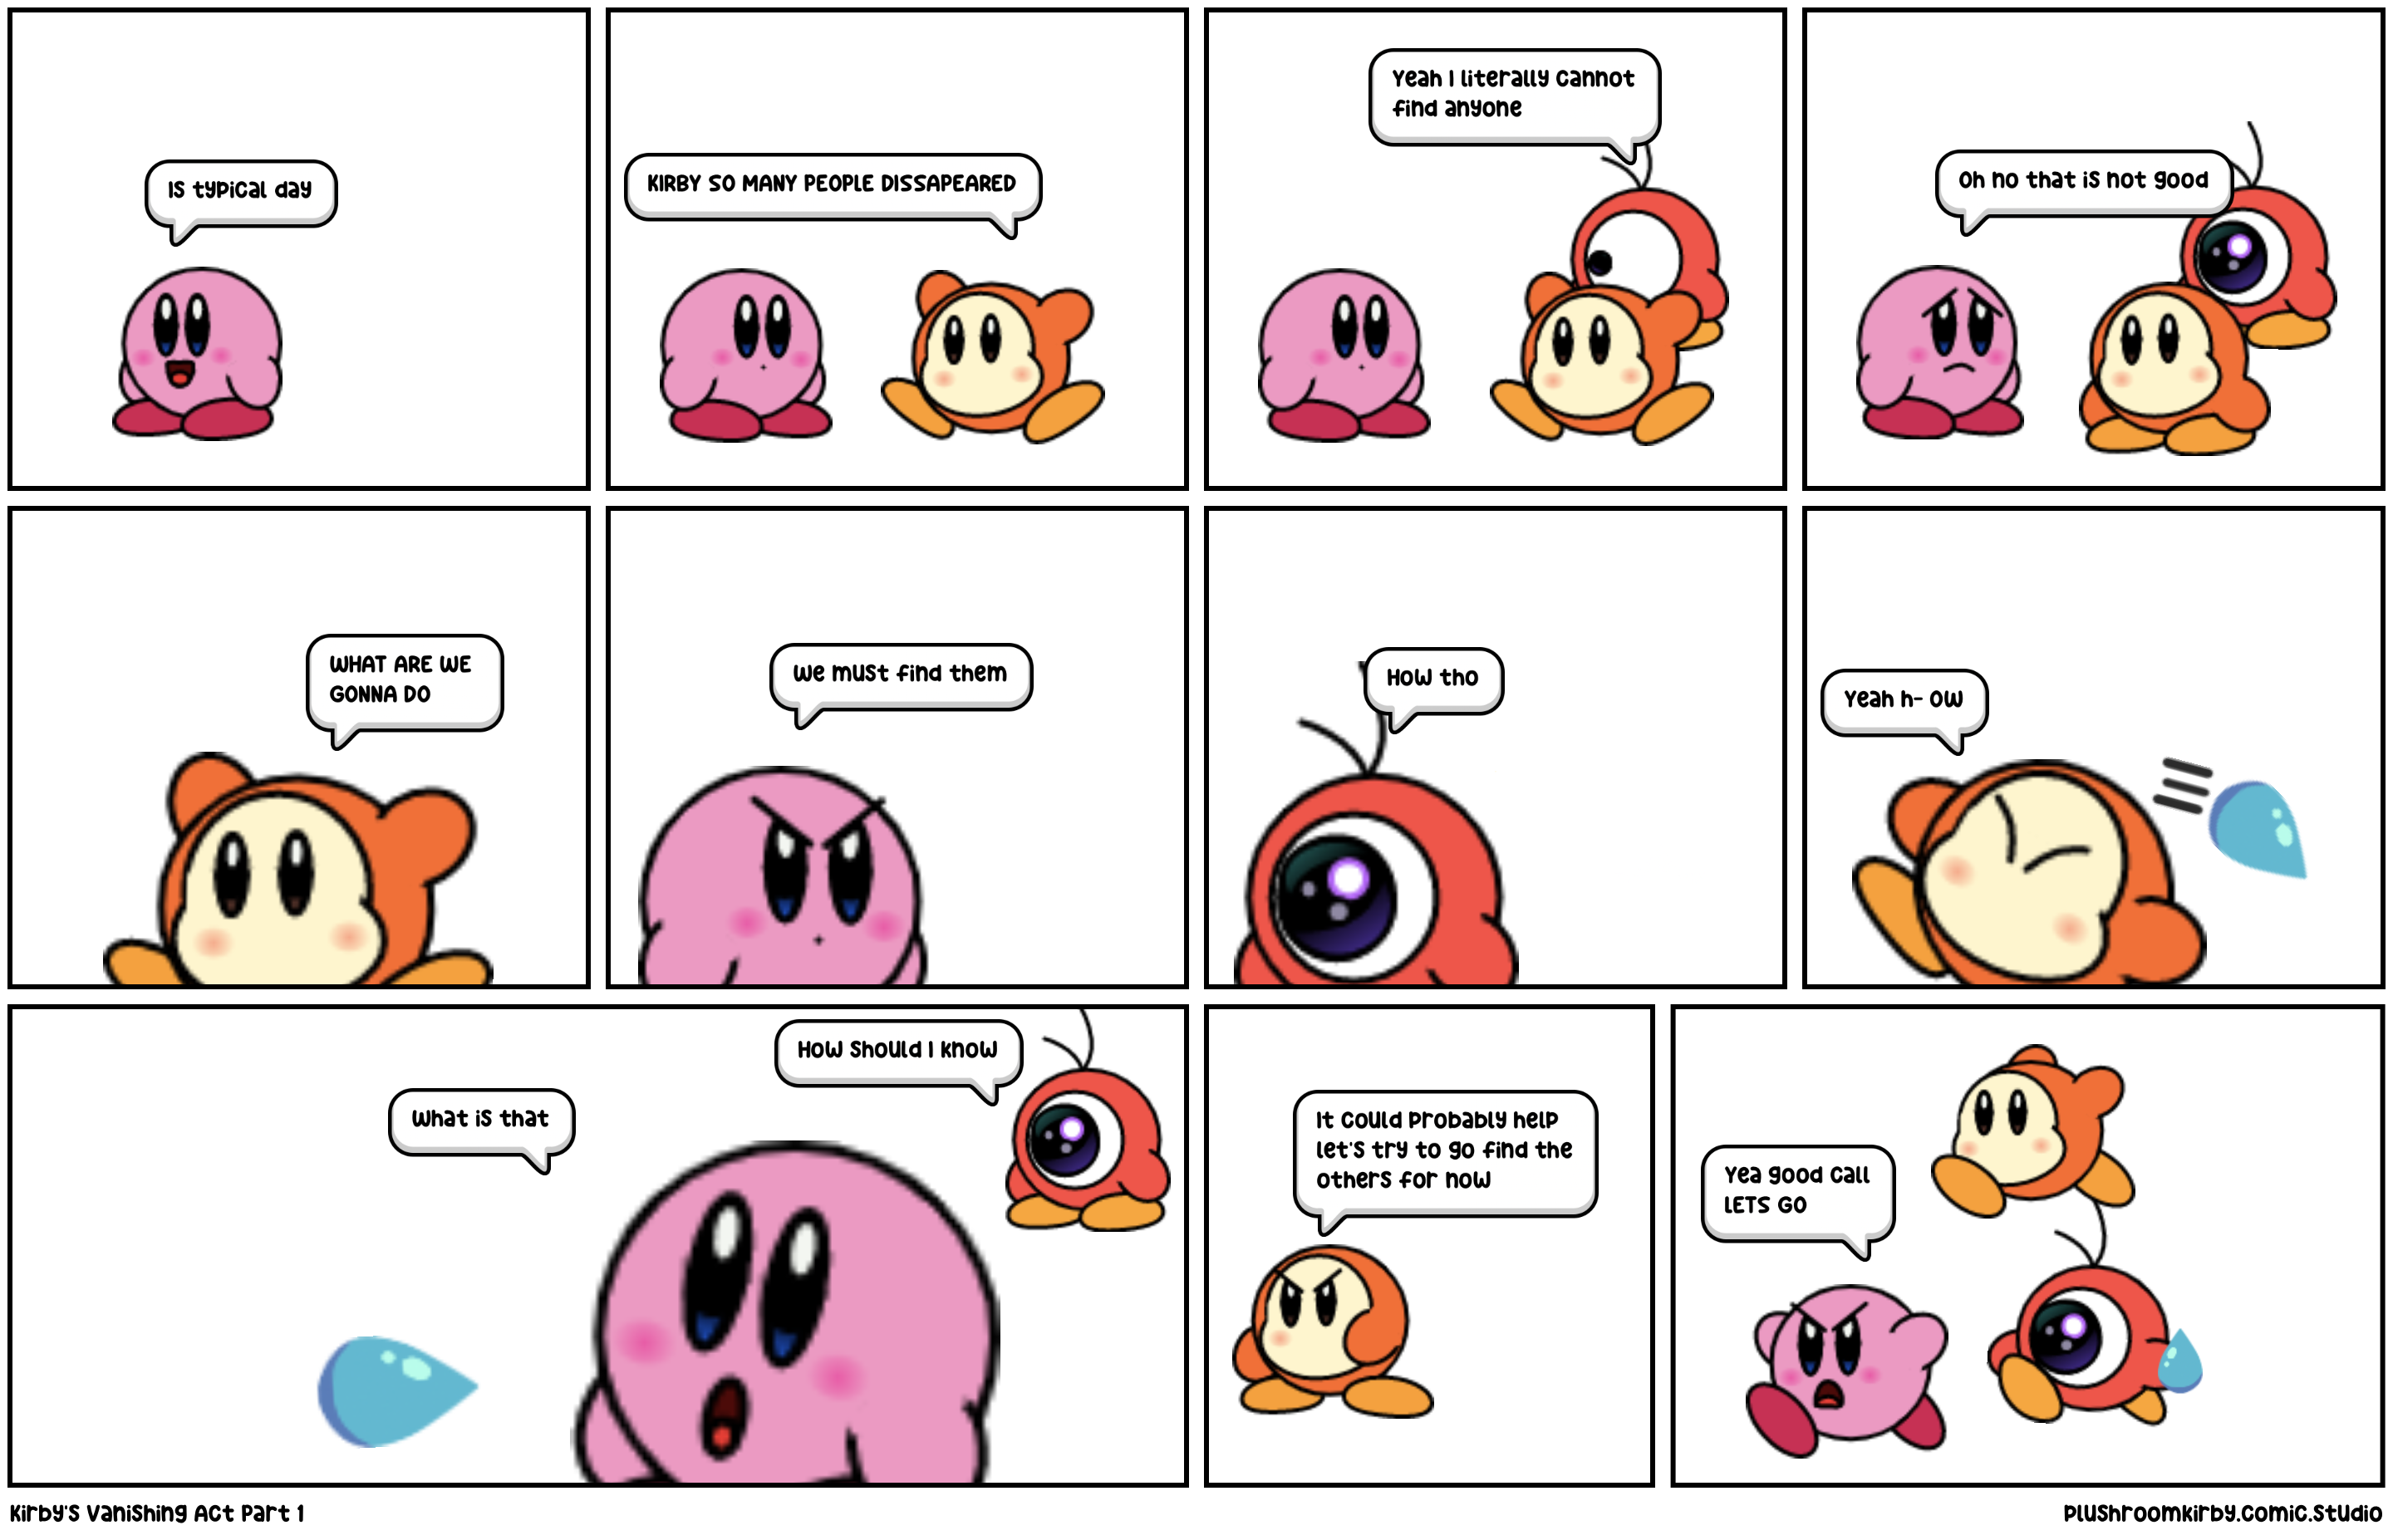 Kirby’s Vanishing Act Part 1